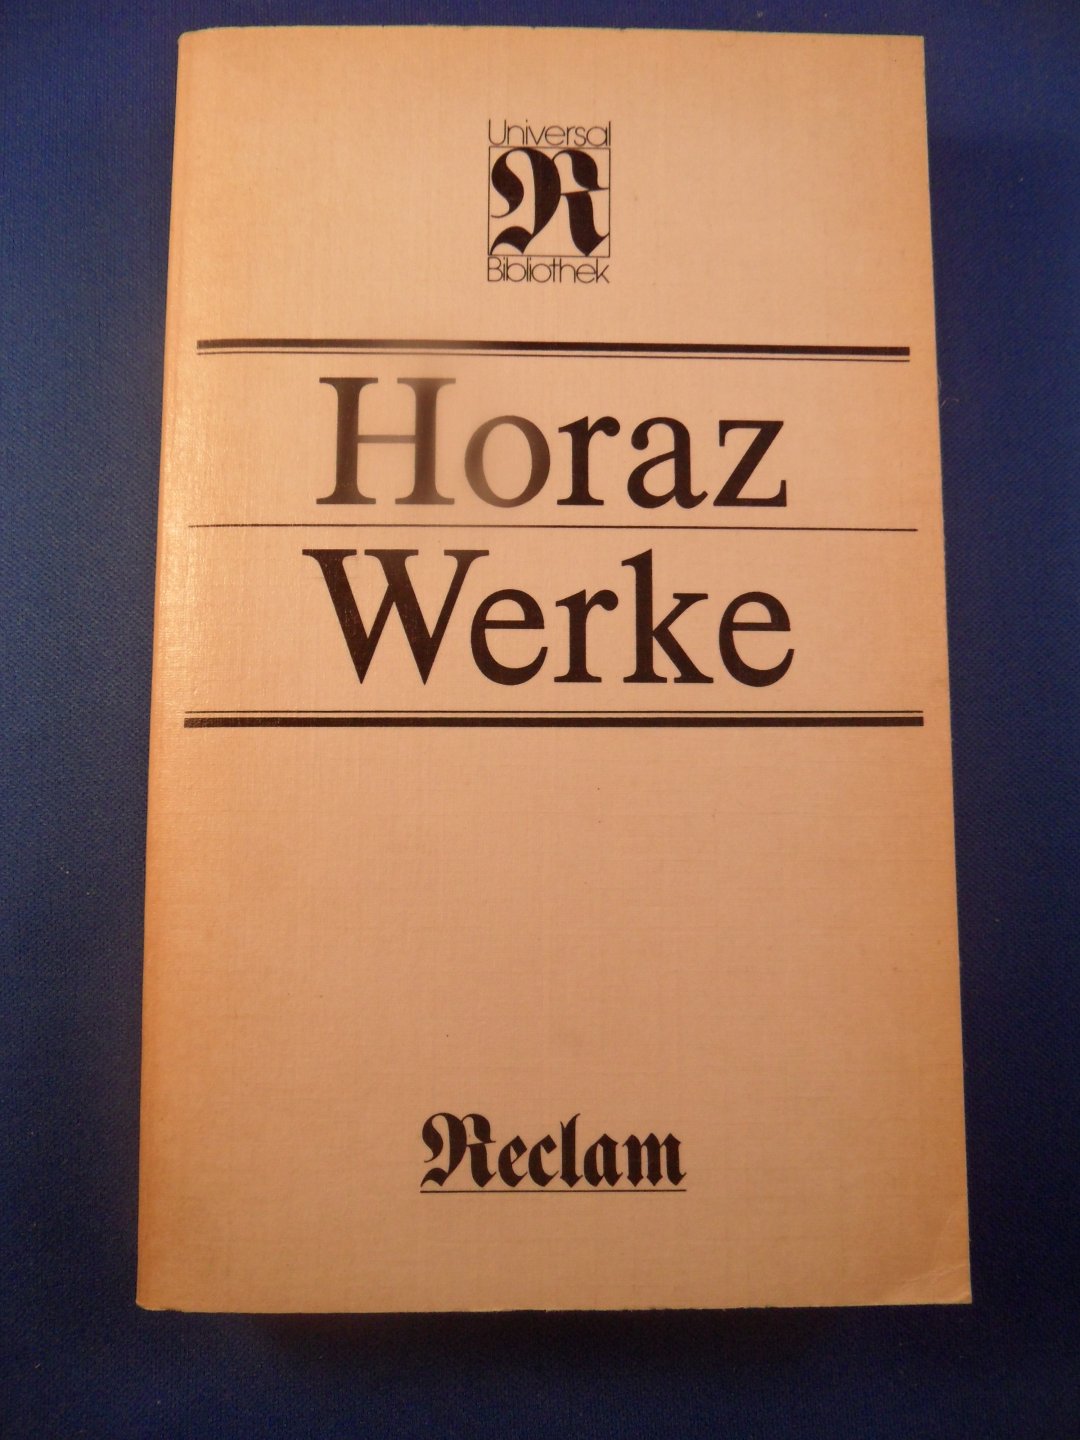 Horaz (Horatius) - Horaz Werke